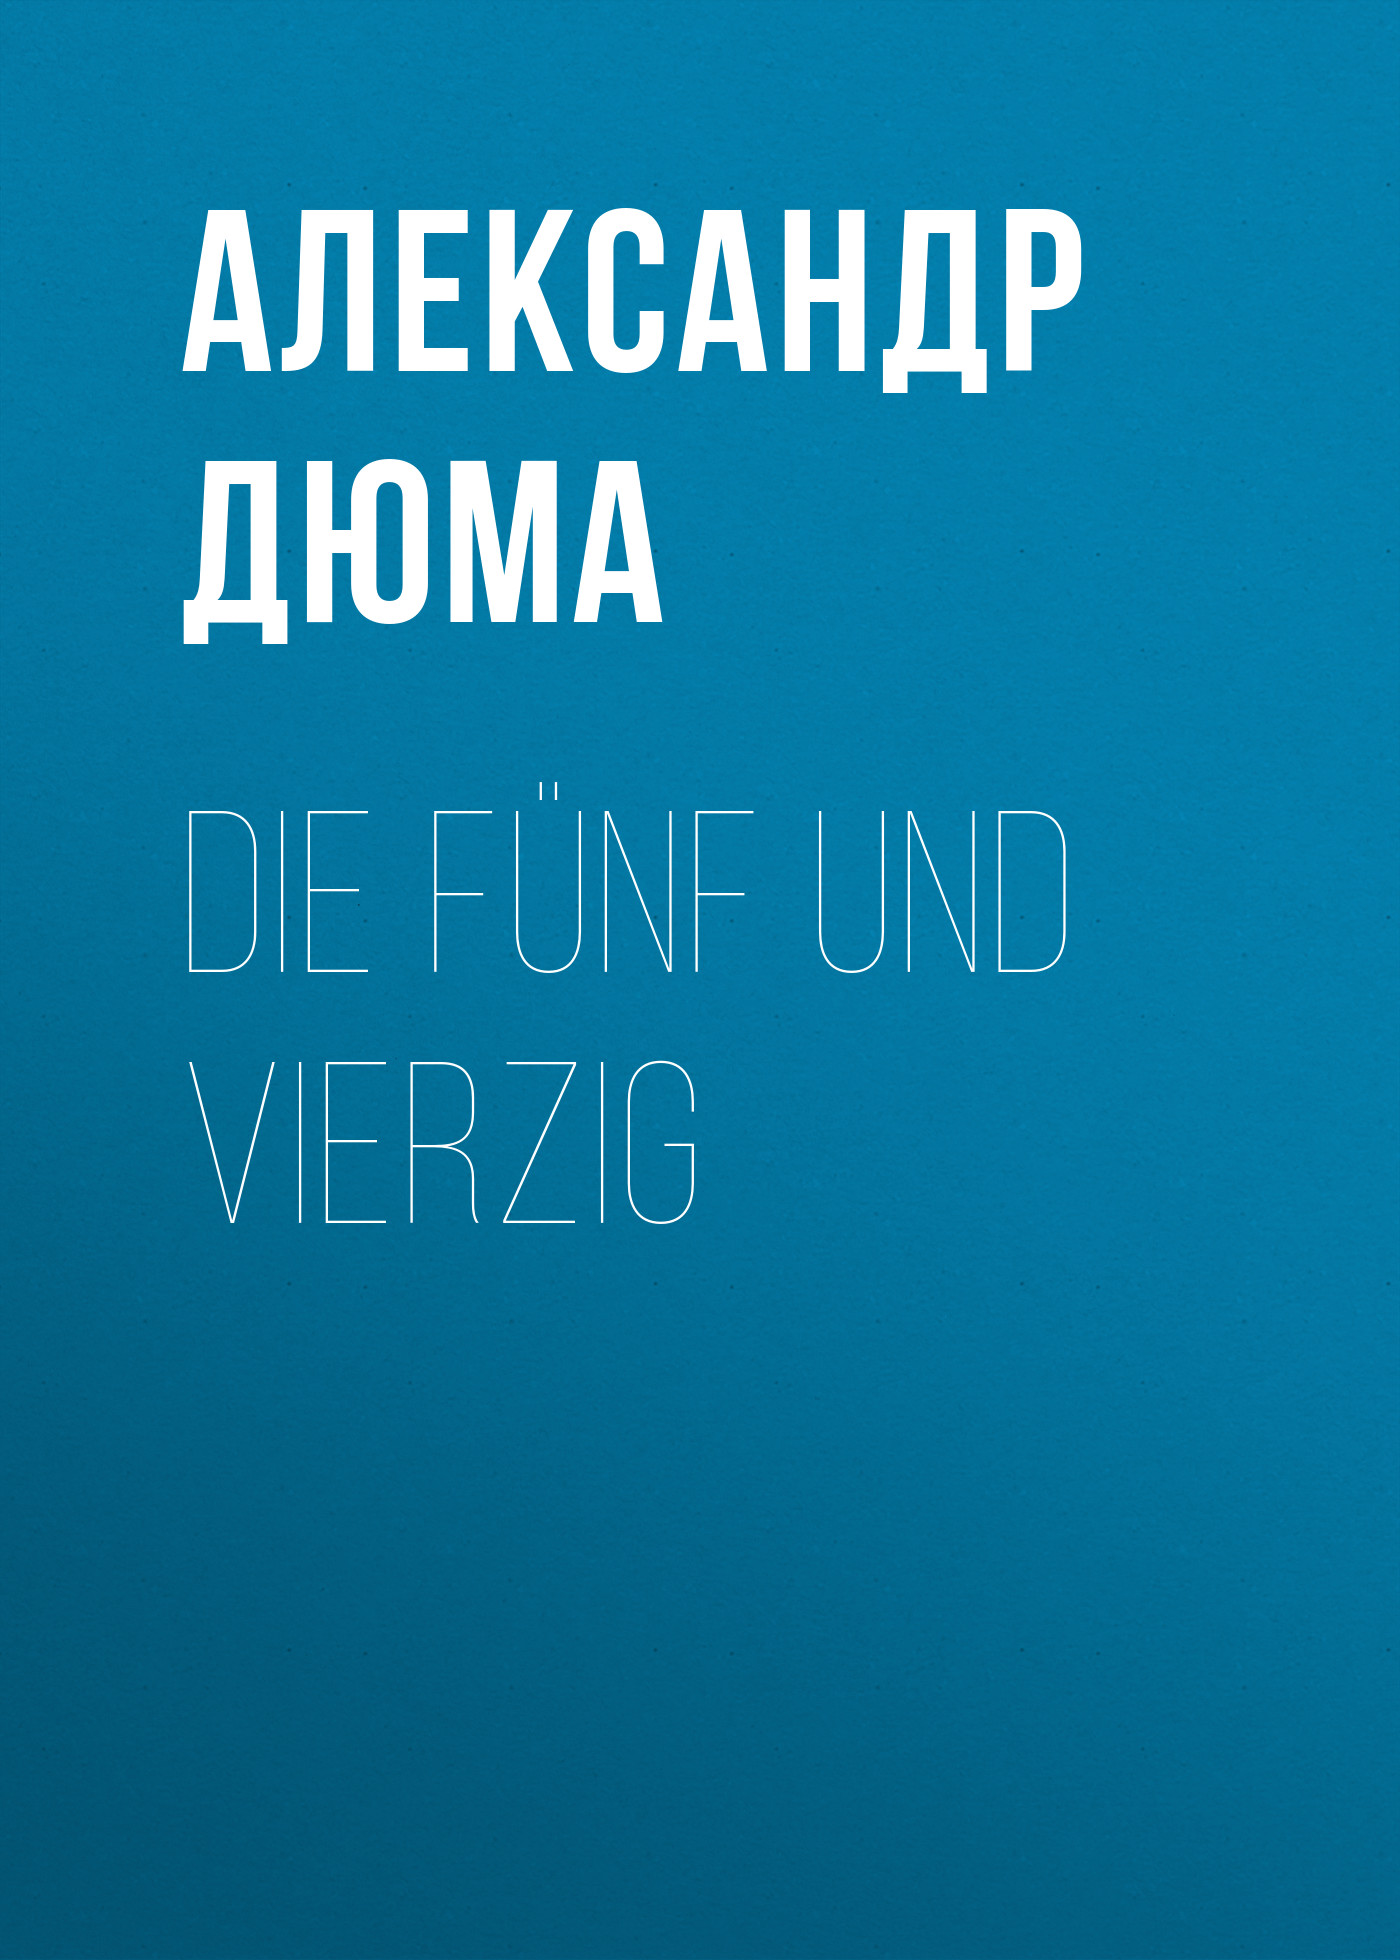 Книга Die Fünf und Vierzig из серии , созданная Alexandre Dumas der Ältere, может относится к жанру Зарубежная классика. Стоимость электронной книги Die Fünf und Vierzig с идентификатором 48632556 составляет 0 руб.